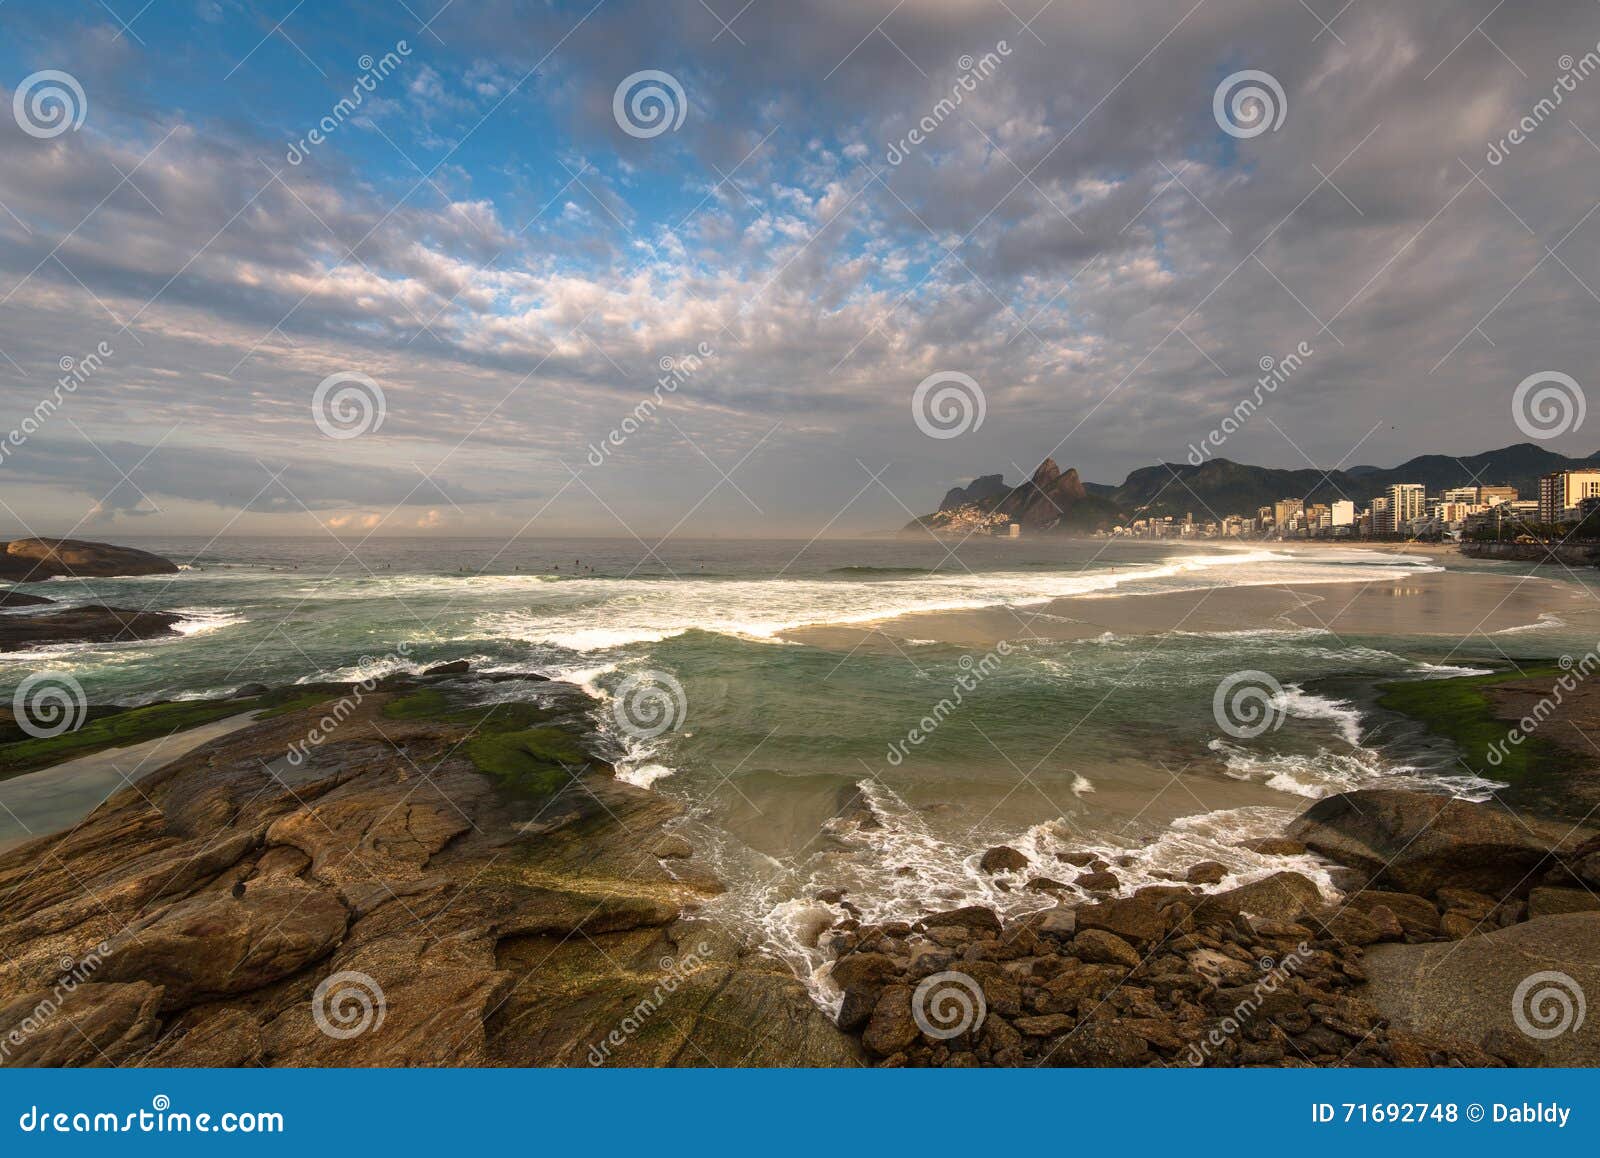 arpoador beach rocks and dramatic sky above rio de janeiro